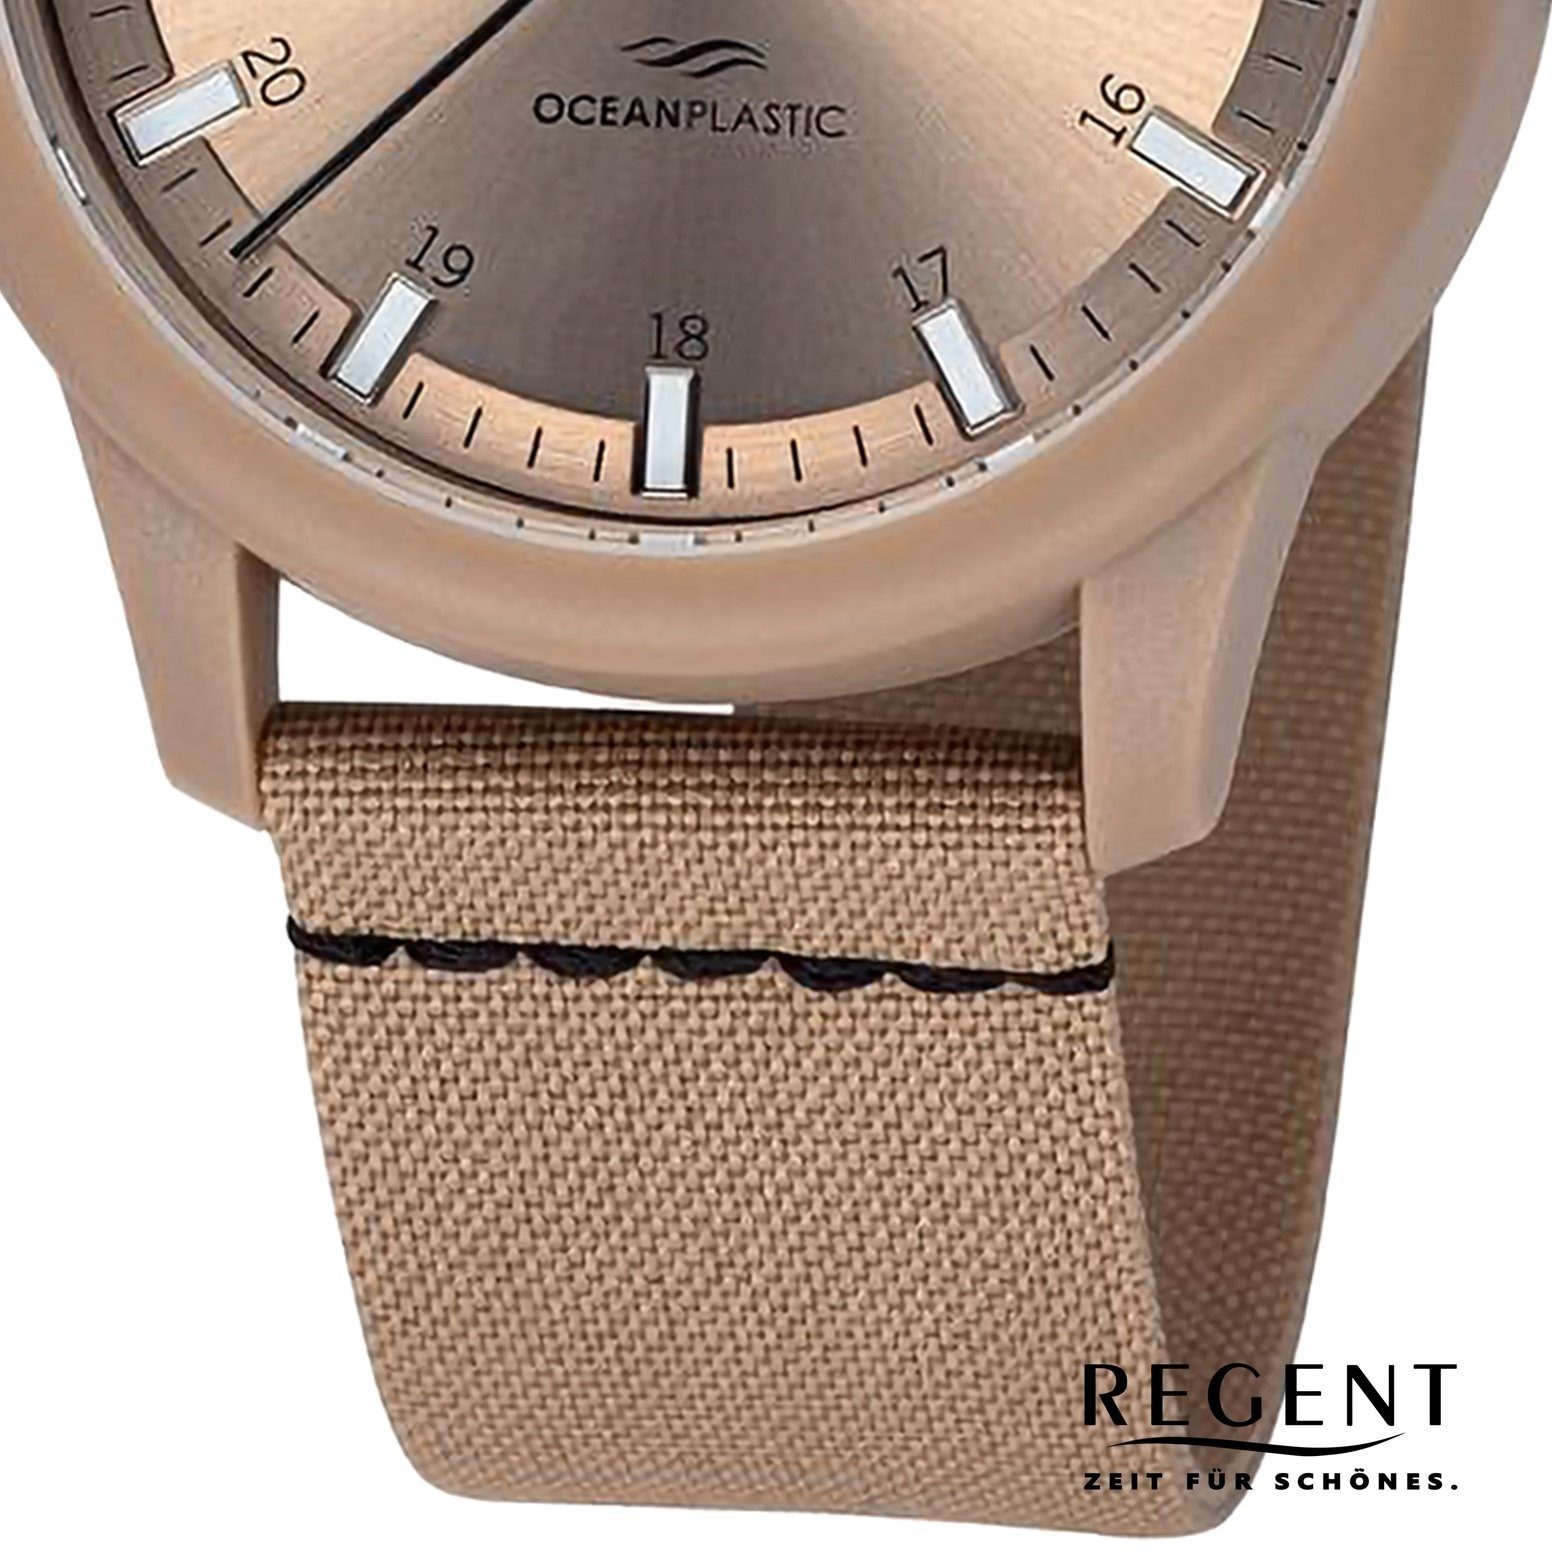 Regent 40mm), extra Herren rund, Analog, Nylonarmband groß Armbanduhr Armbanduhr Regent (ca. Quarzuhr Herren